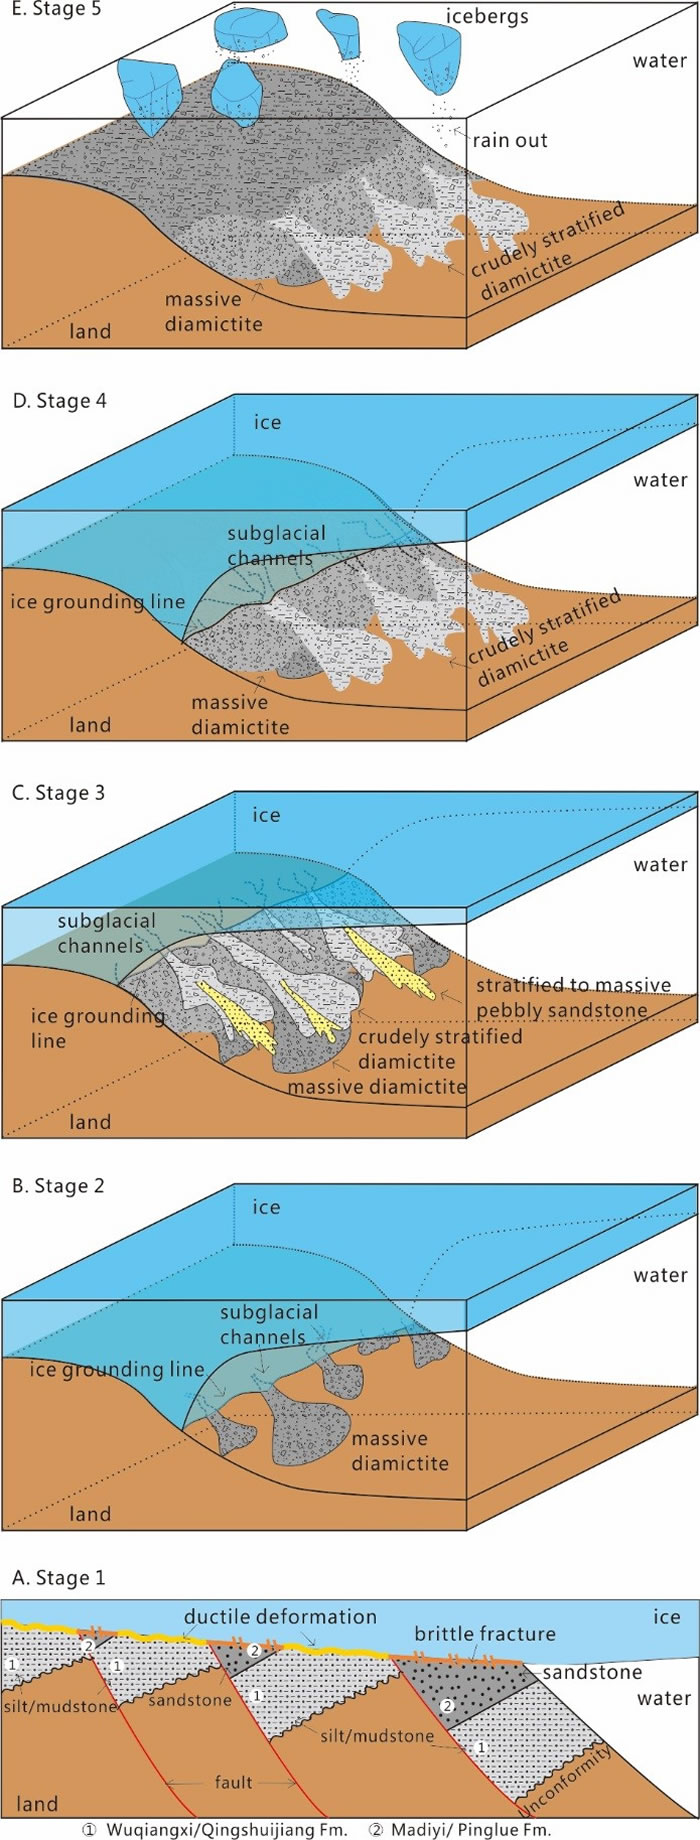 铁丝坳-东山峰组的沉积过程模式图